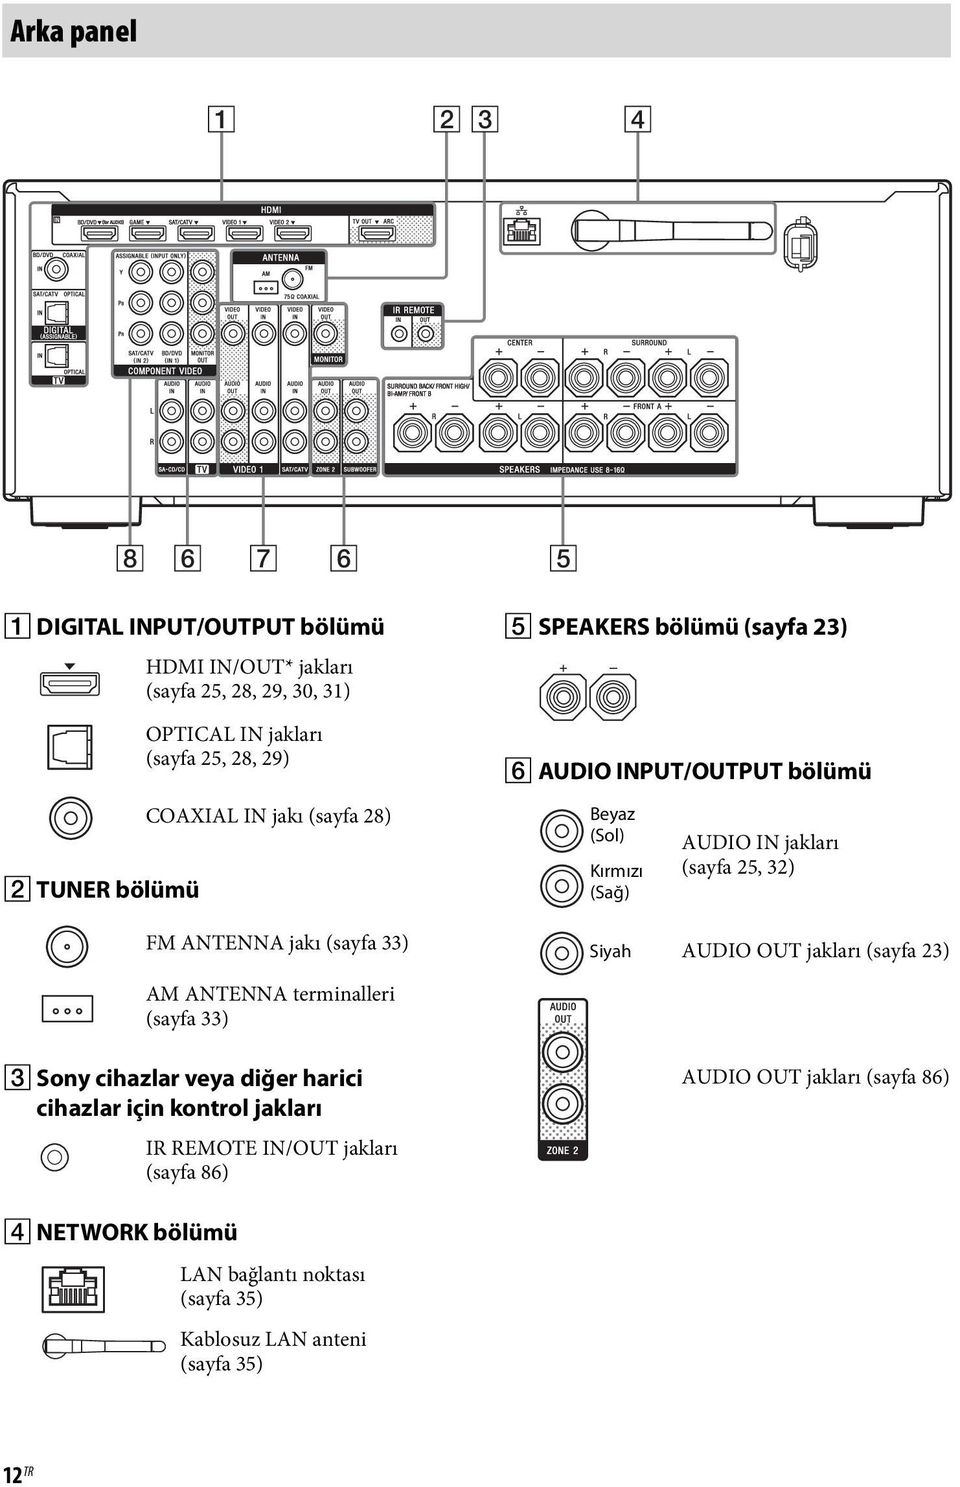 ANTENNA jakı (sayfa 33) AM ANTENNA terminalleri (sayfa 33) Siyah AUDIO OUT jakları (sayfa 23) C Sony cihazlar veya diğer harici cihazlar için kontrol